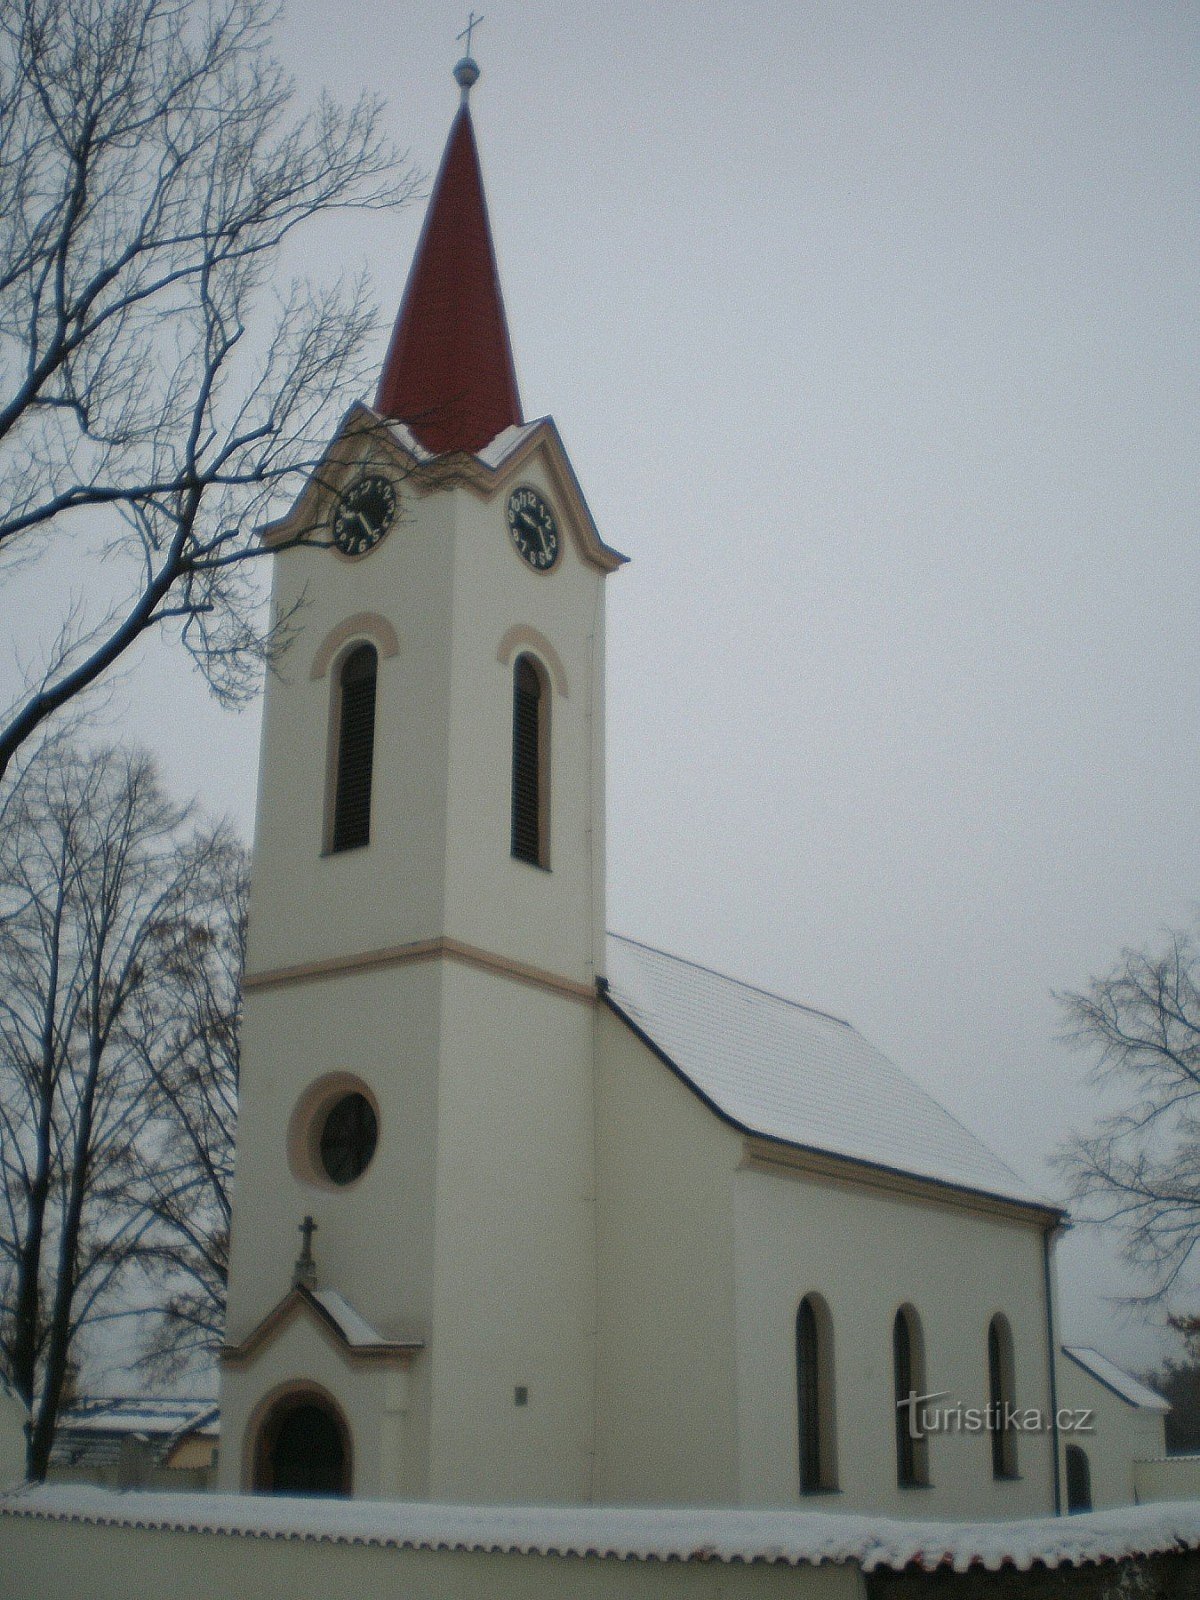 Dubeček - cerkev sv. Peter